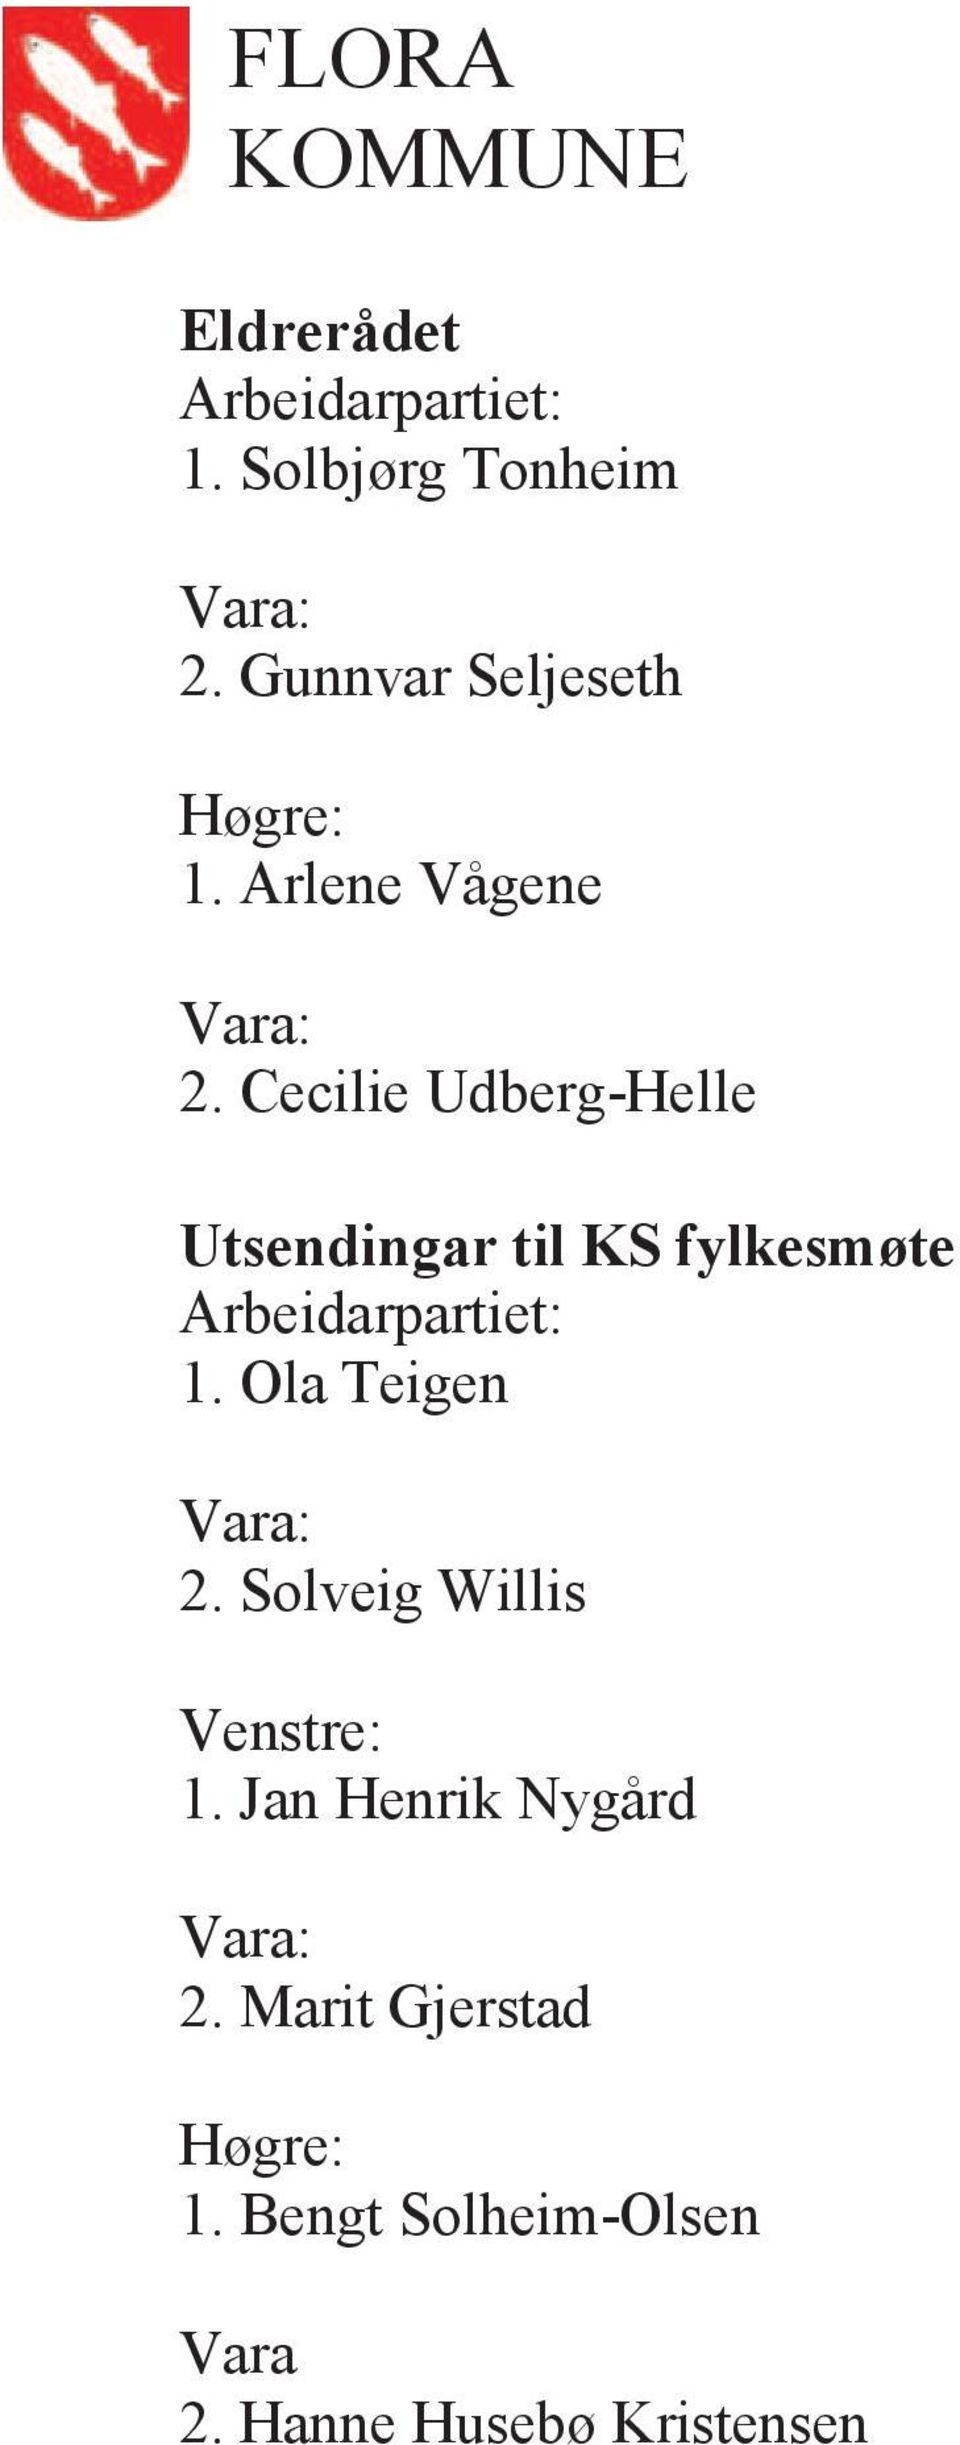 Cecilie Udberg-Helle Utsendingar til KS fylkesmøte 1.